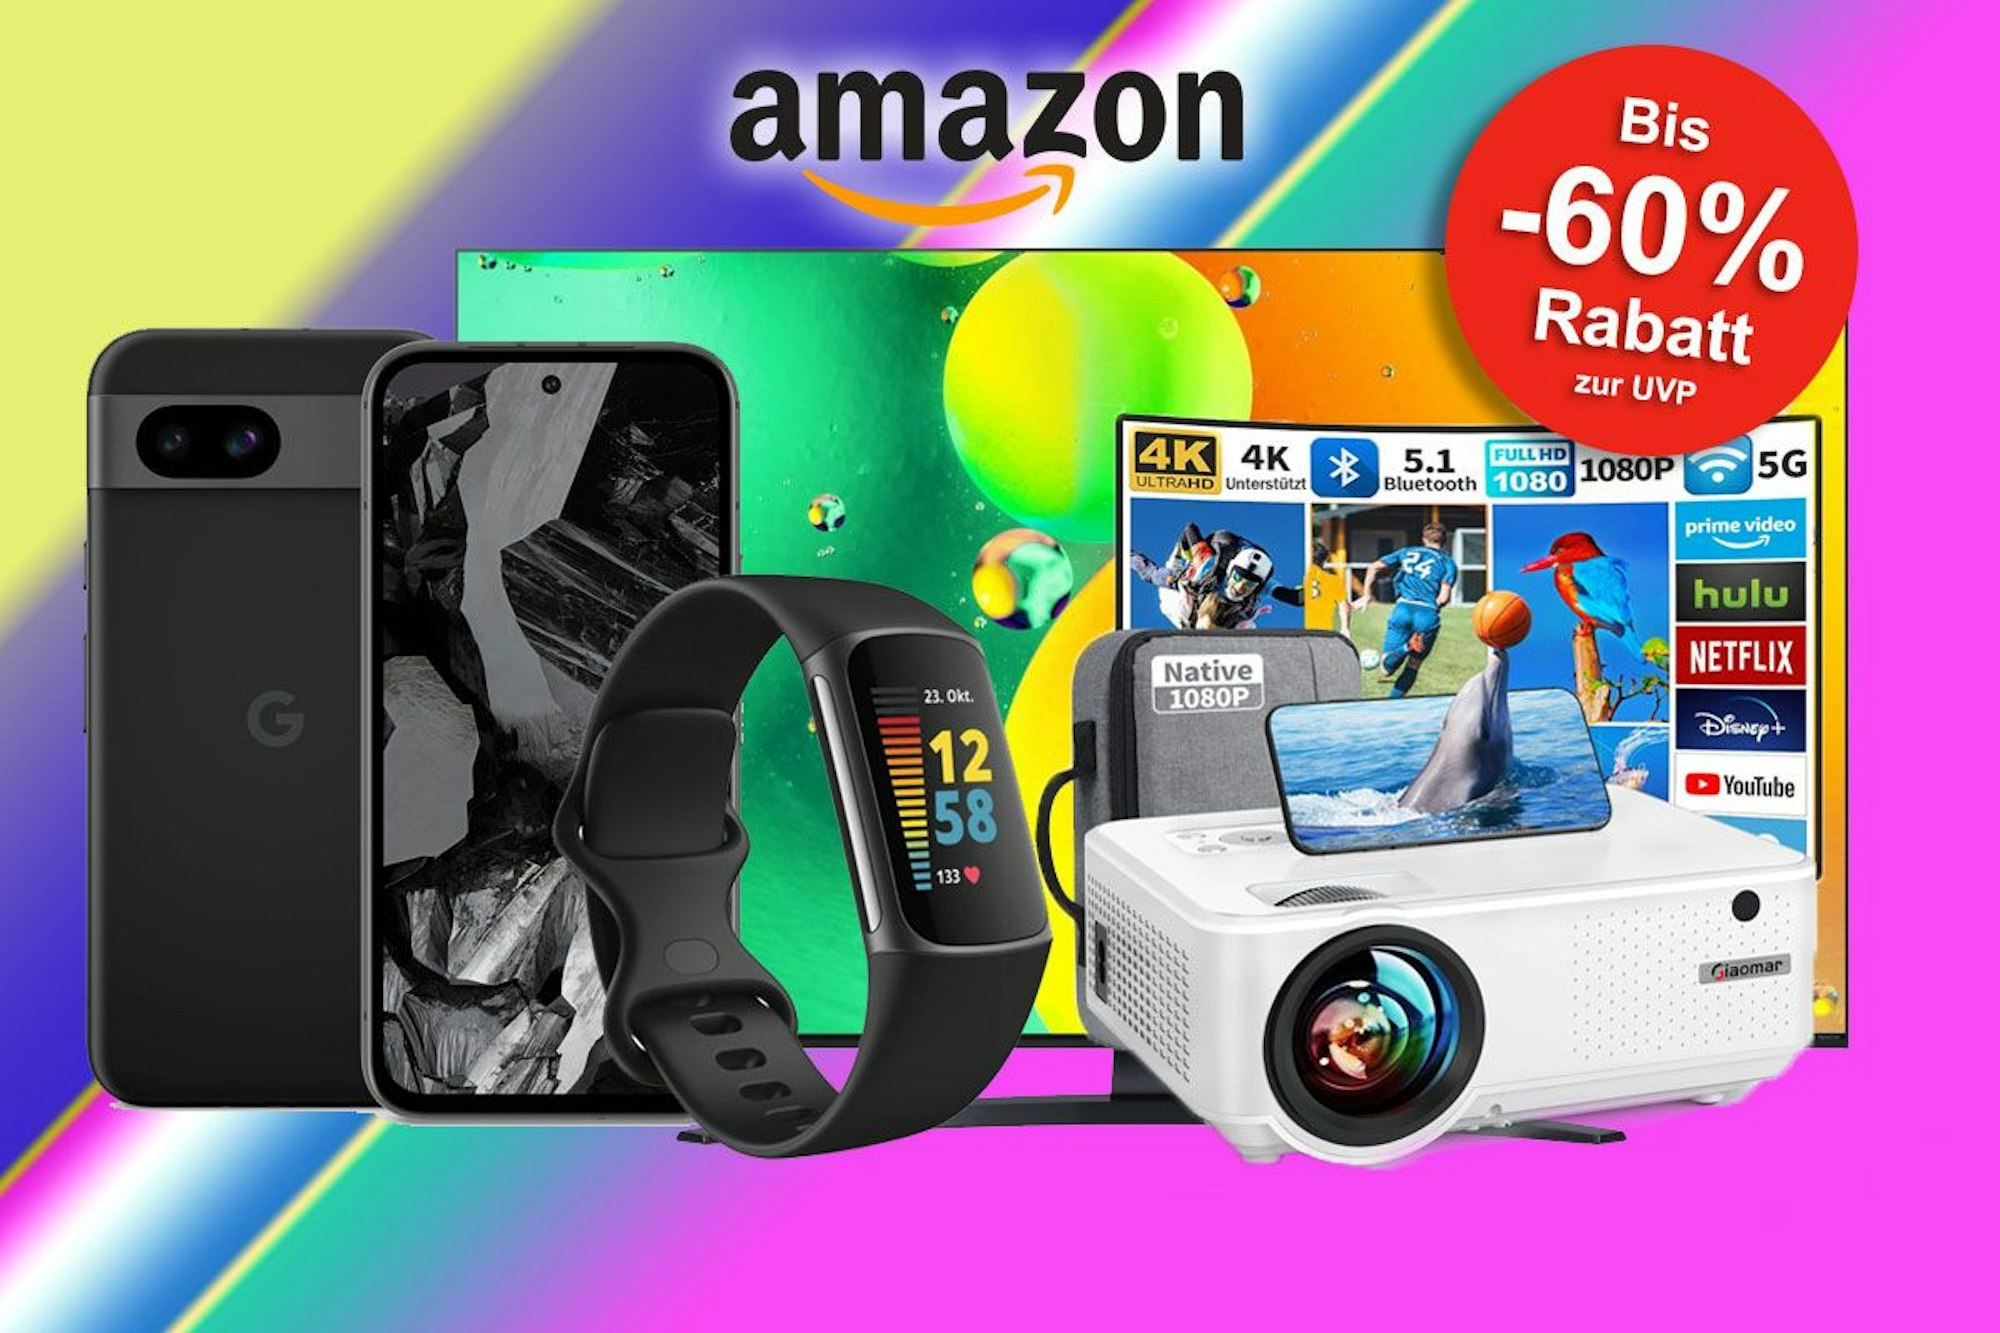 Auf dem Bild sind unterschiedliche Elektronik Produkte zu sehen, die bei Amazon angeboten werden.